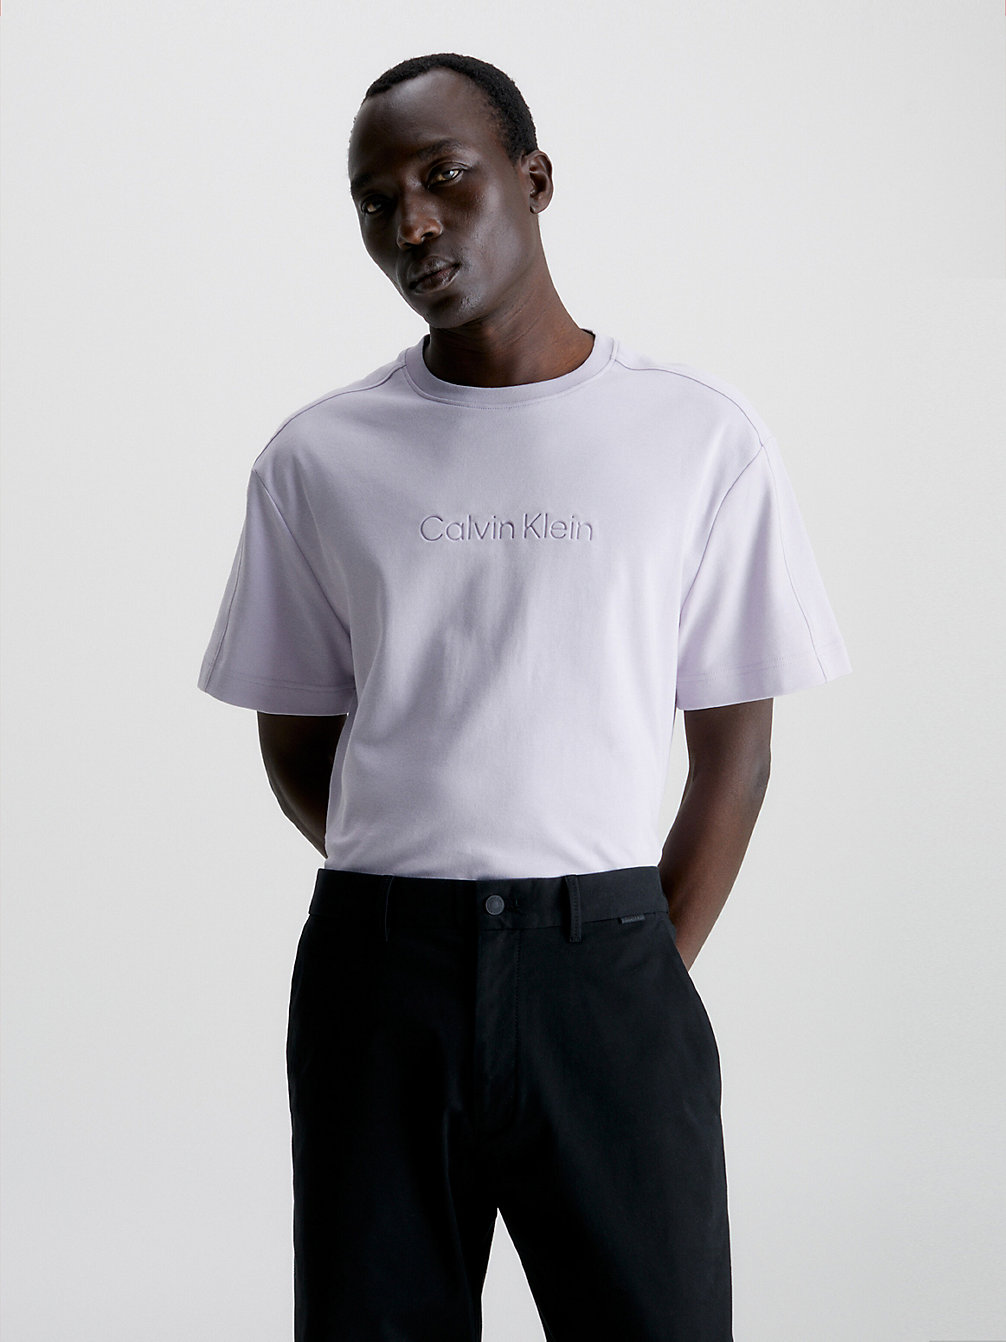 MISTY LILAC Relaxtes T-Shirt Aus Bio-Baumwolle undefined Herren Calvin Klein